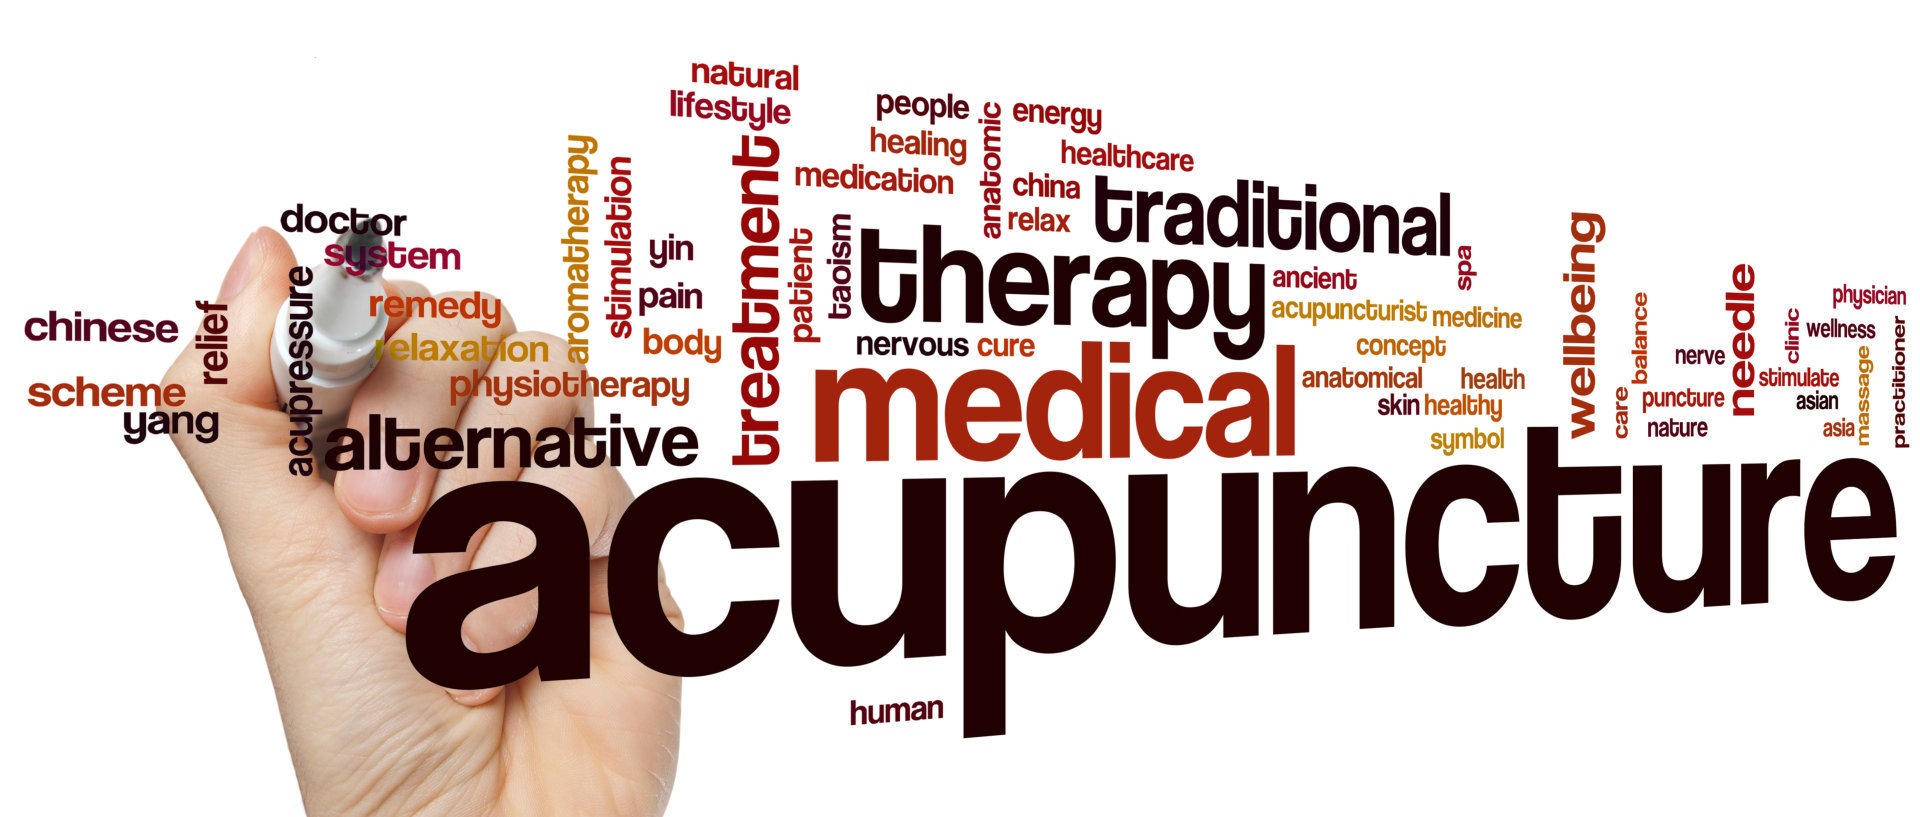 acupunture concept